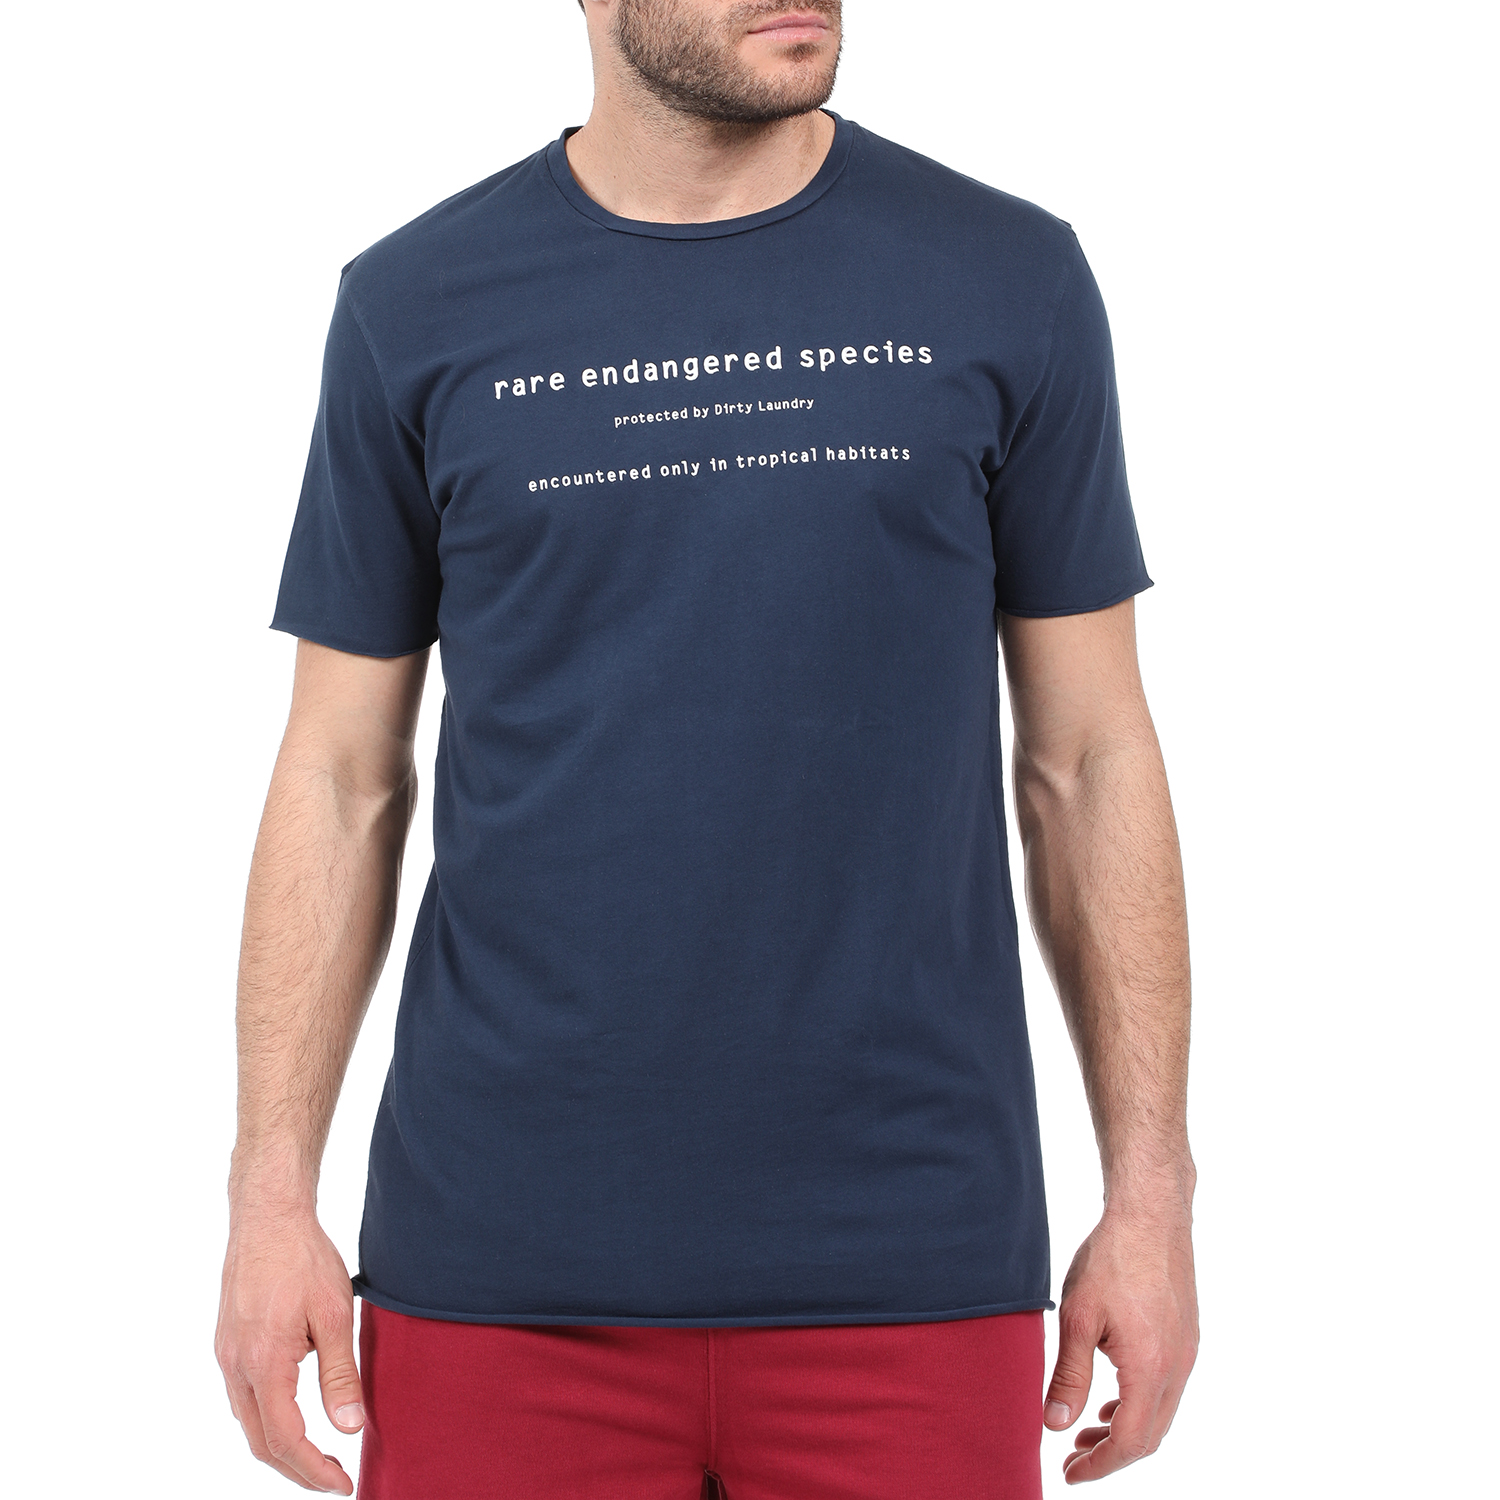 Ανδρικά/Ρούχα/Μπλούζες/Κοντομάνικες DIRTY LAUNDRY - Ανδρική μπλούζα DIRTY LAUNDRY RARE SPECIES μπλε